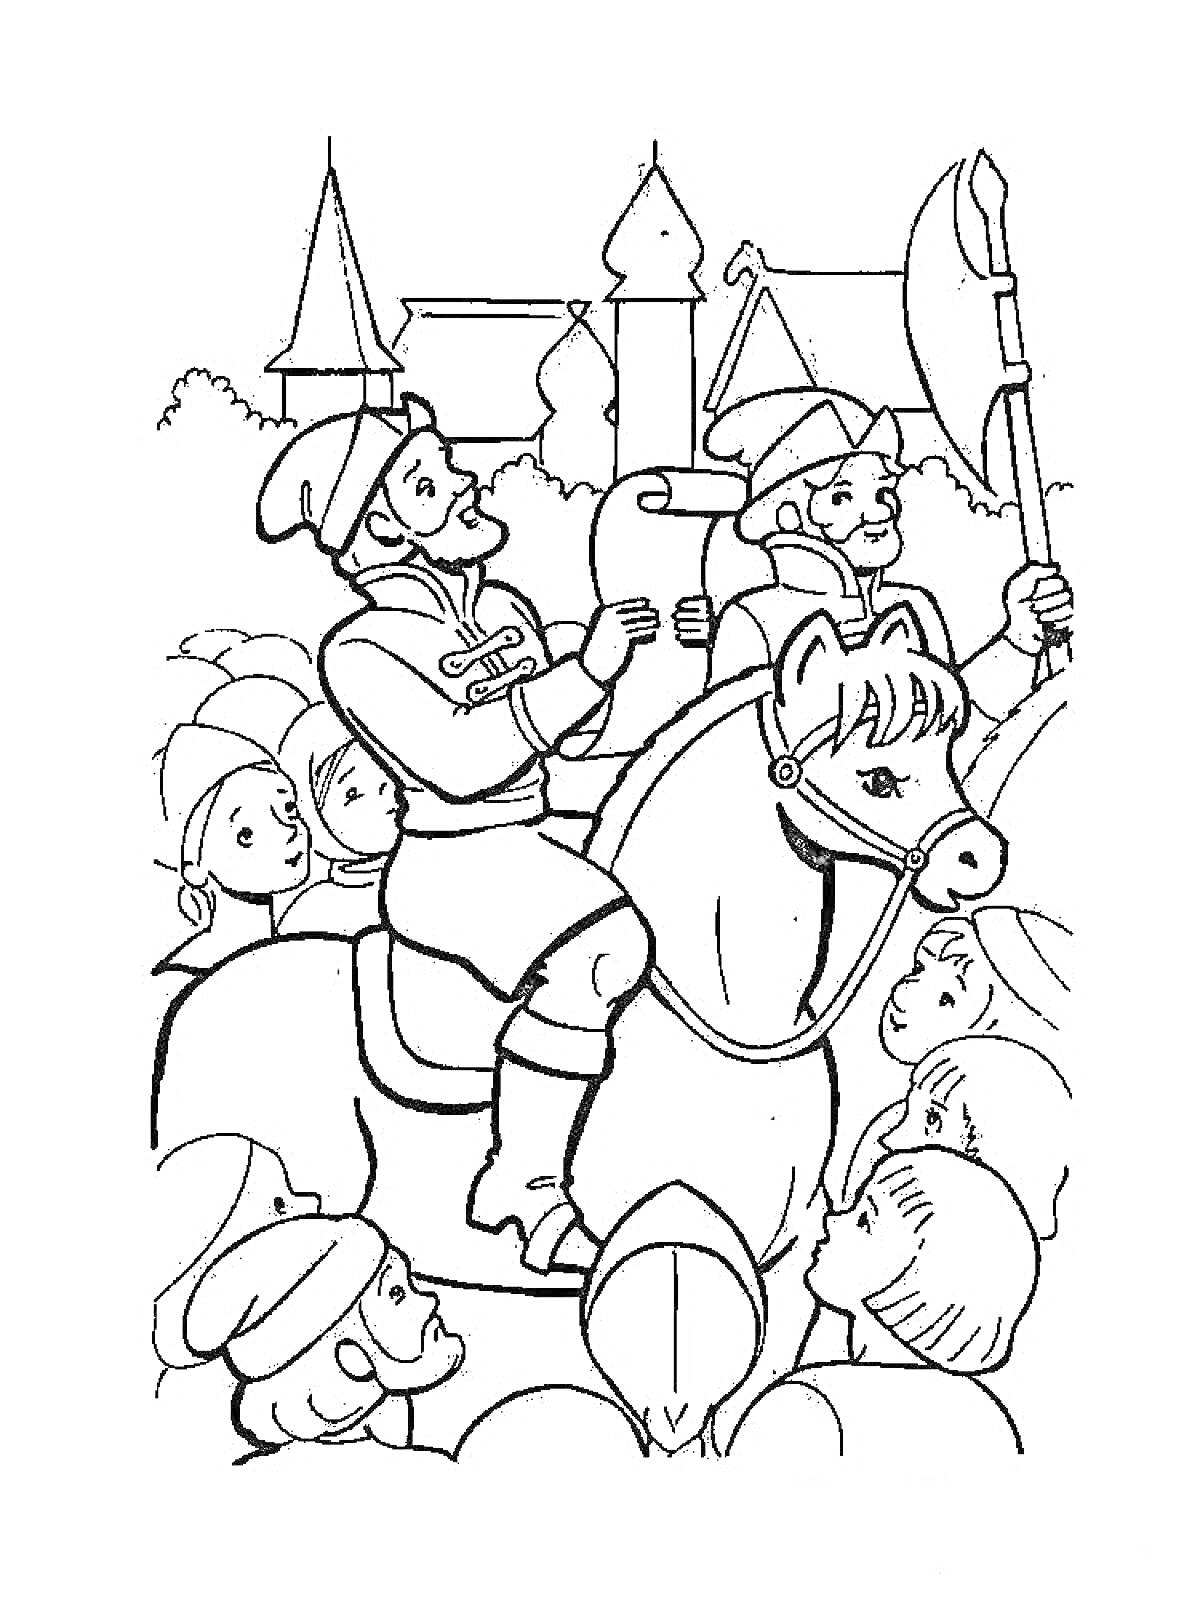 На раскраске изображено: Всадник, Лошадь, Свиток, Замок, Деревья, Колпаки, Башни, Крыша, Человек, Топоры, Шлемы